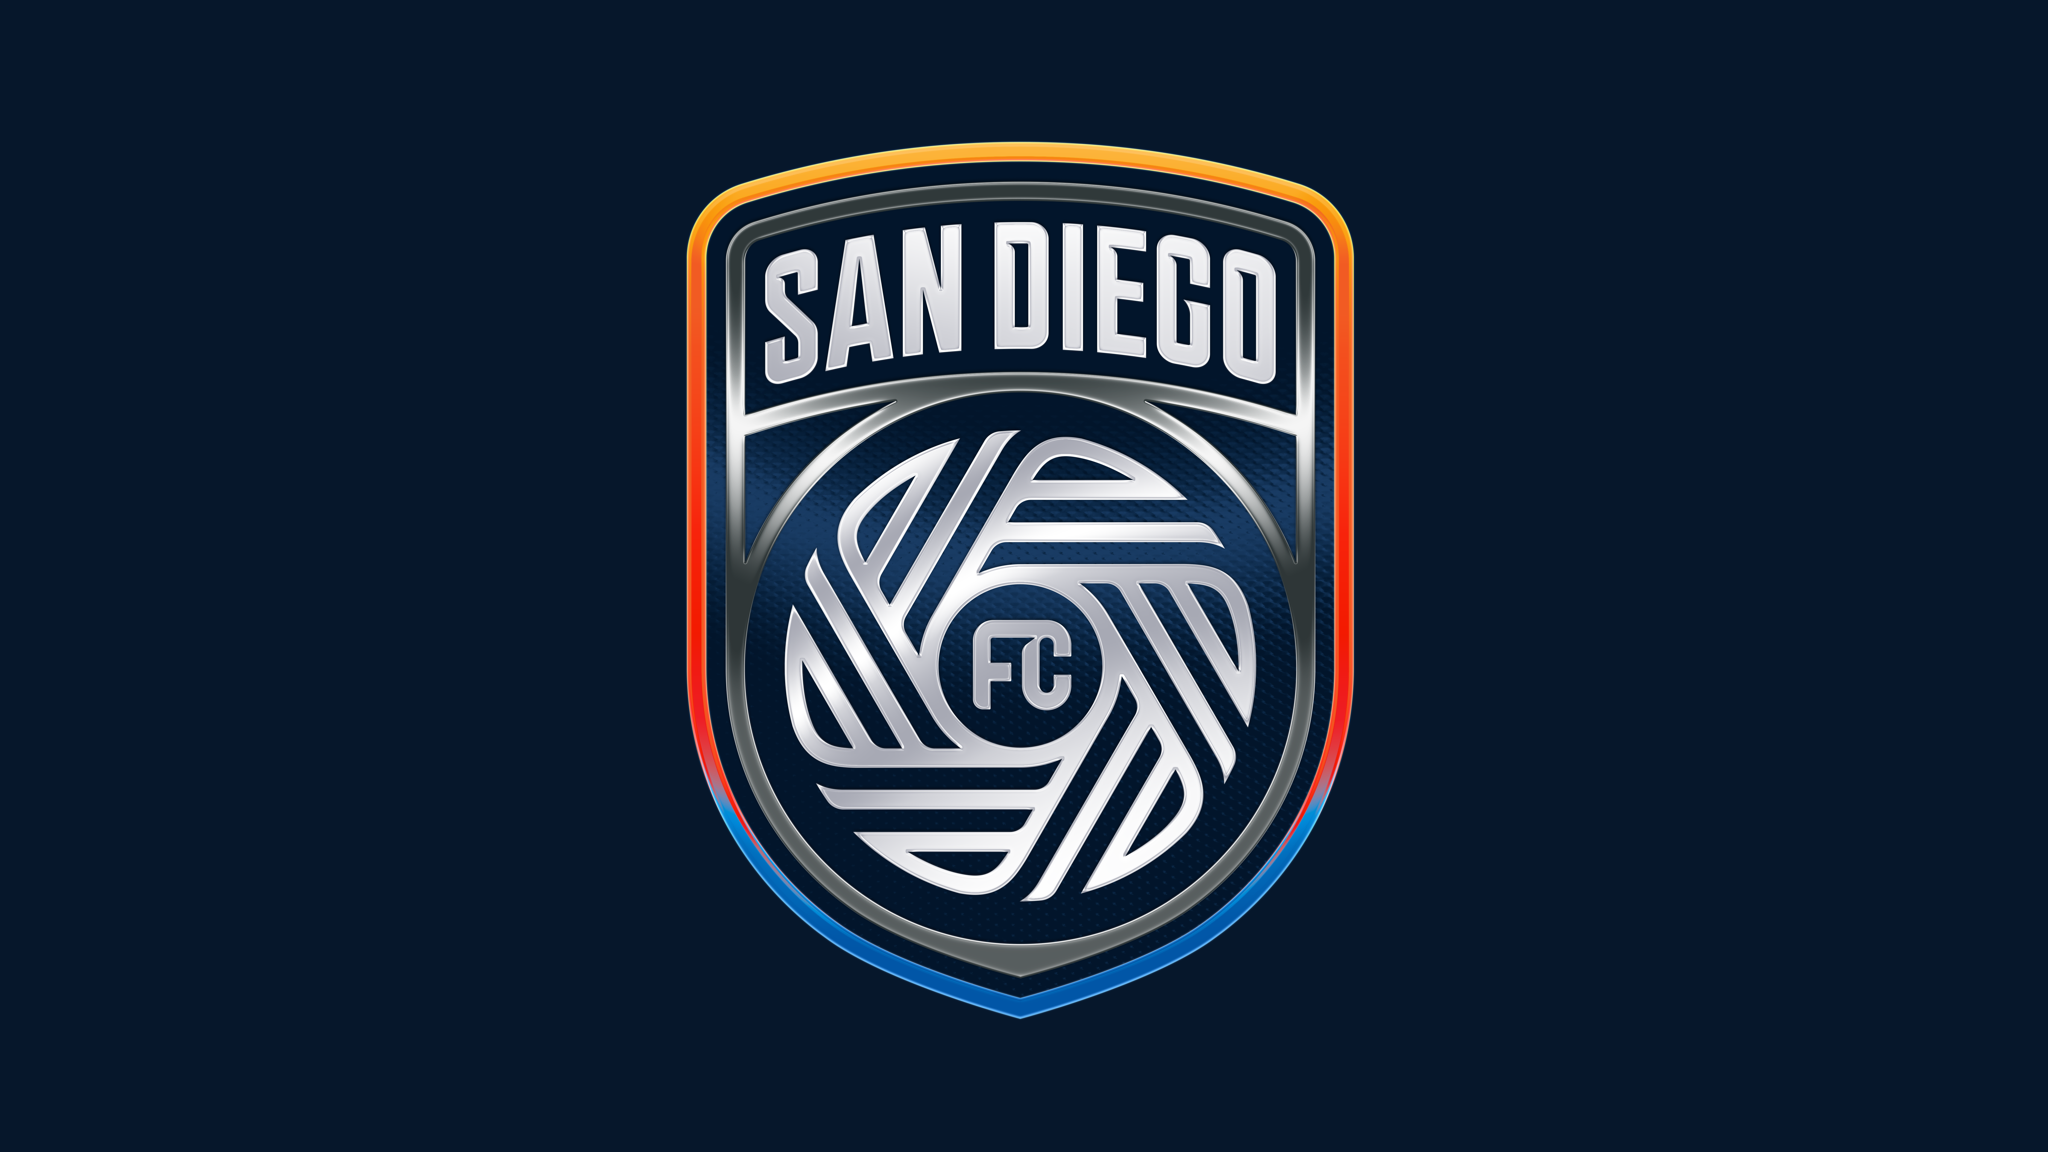 San Diego Football Club crest